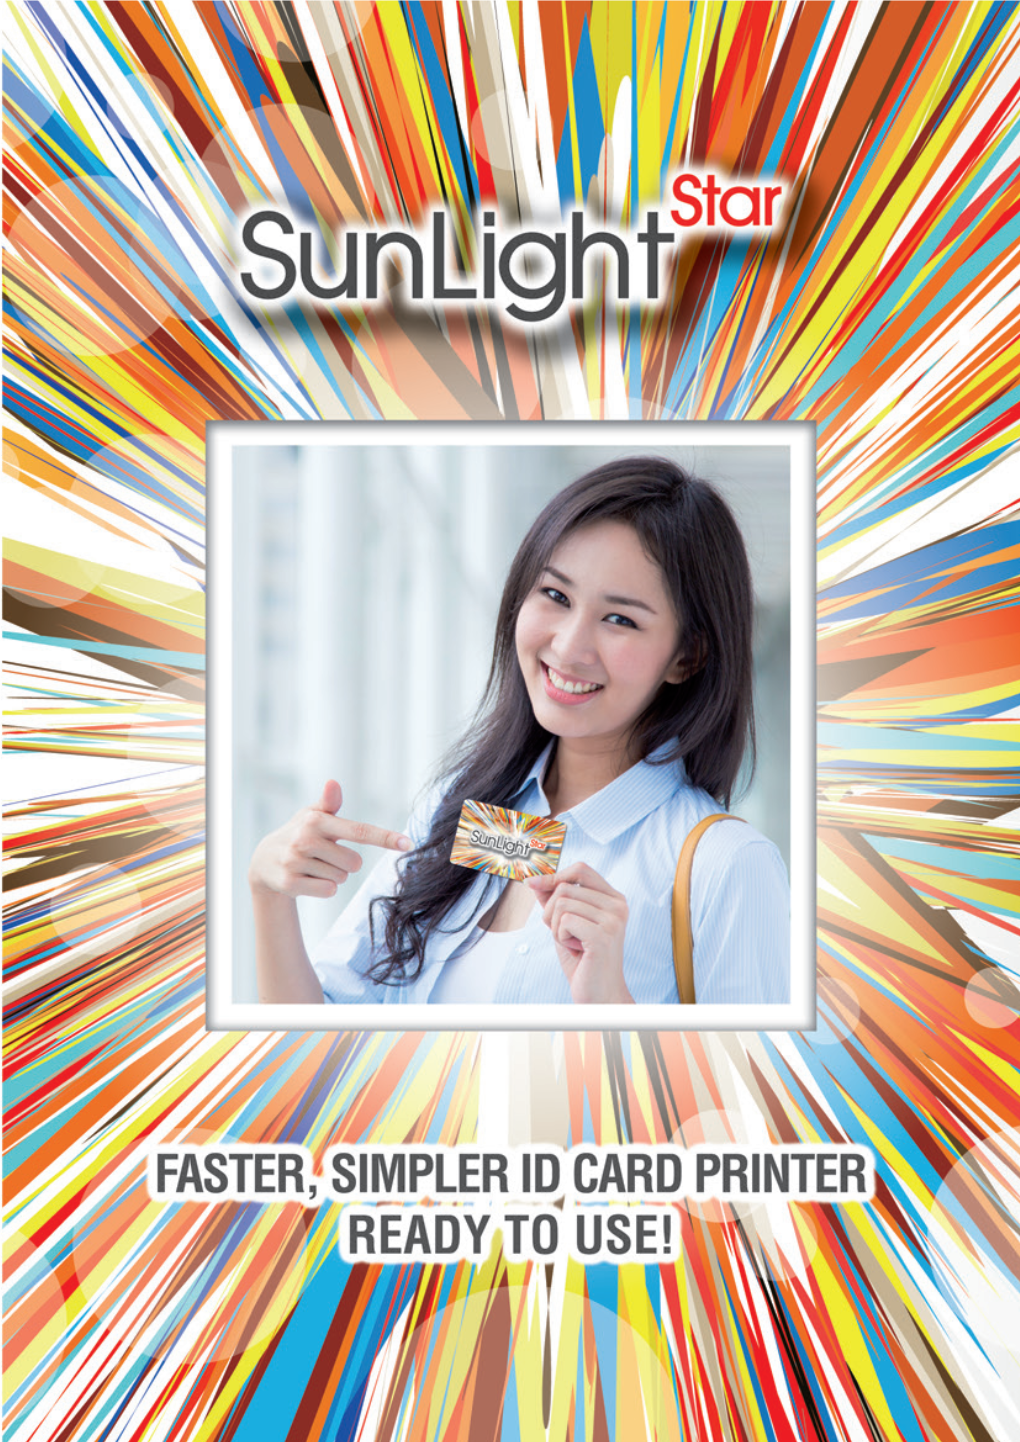 Brochure Sunlight Star New